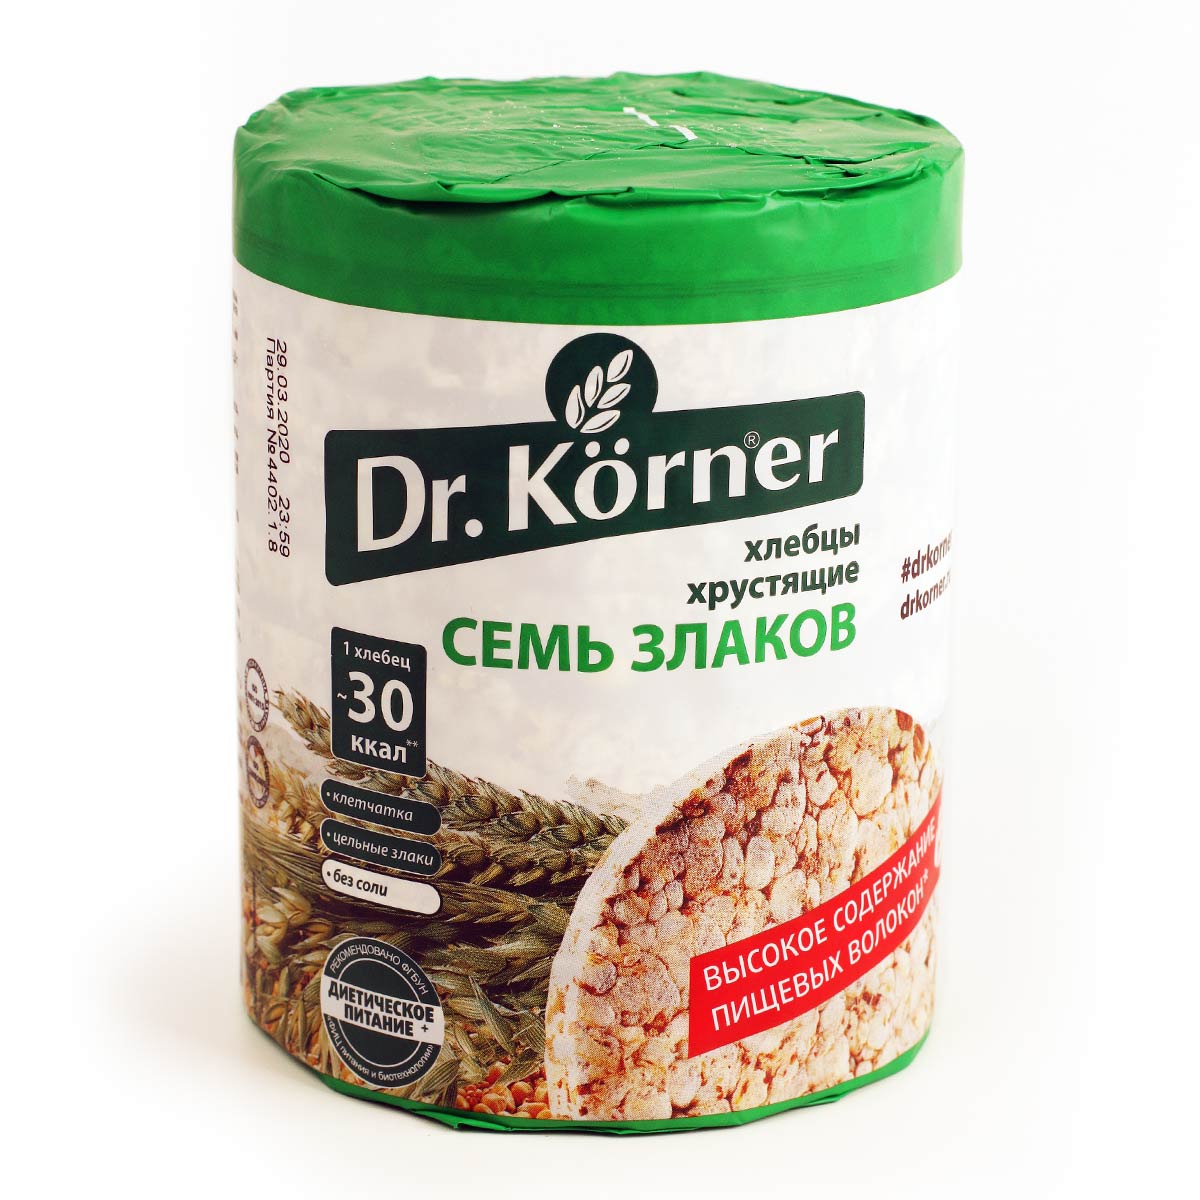 Dr. Korner хлебцы Доктор Корнер хрустящие Семь злаков 100г